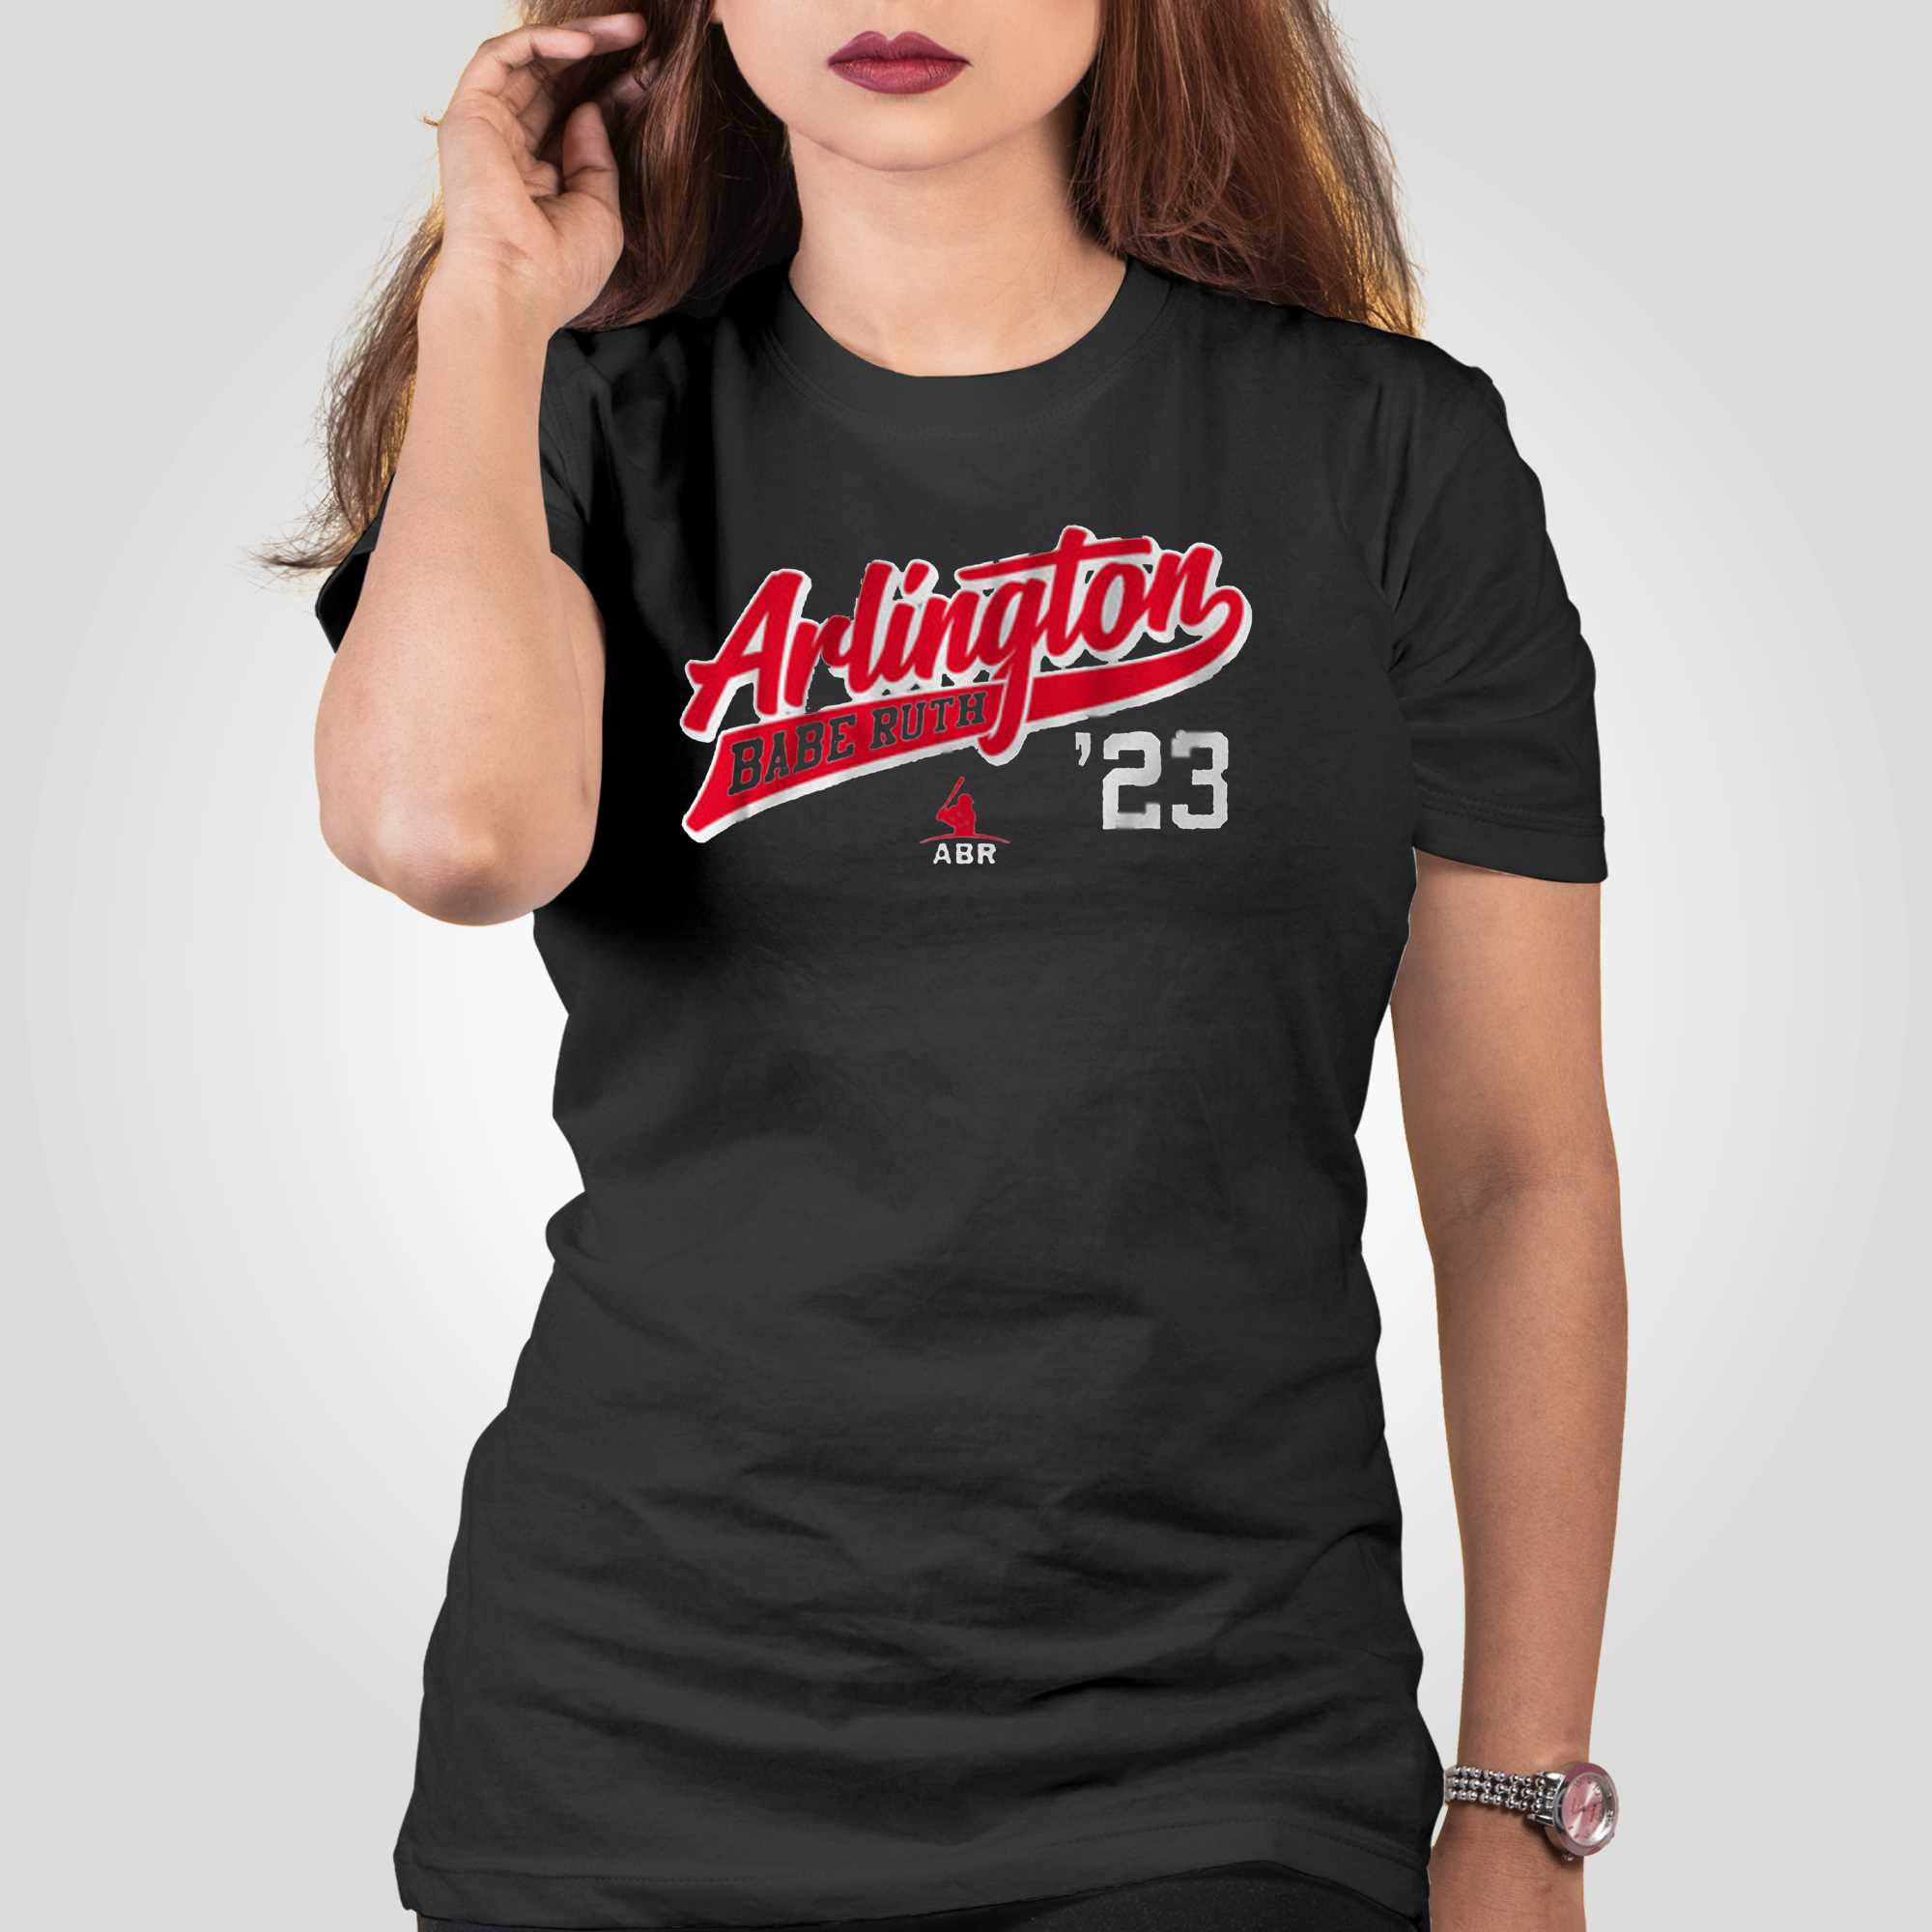 Arlington Babe Ruth 2023 Exclusive Gray T-shirt - Shibtee Clothing